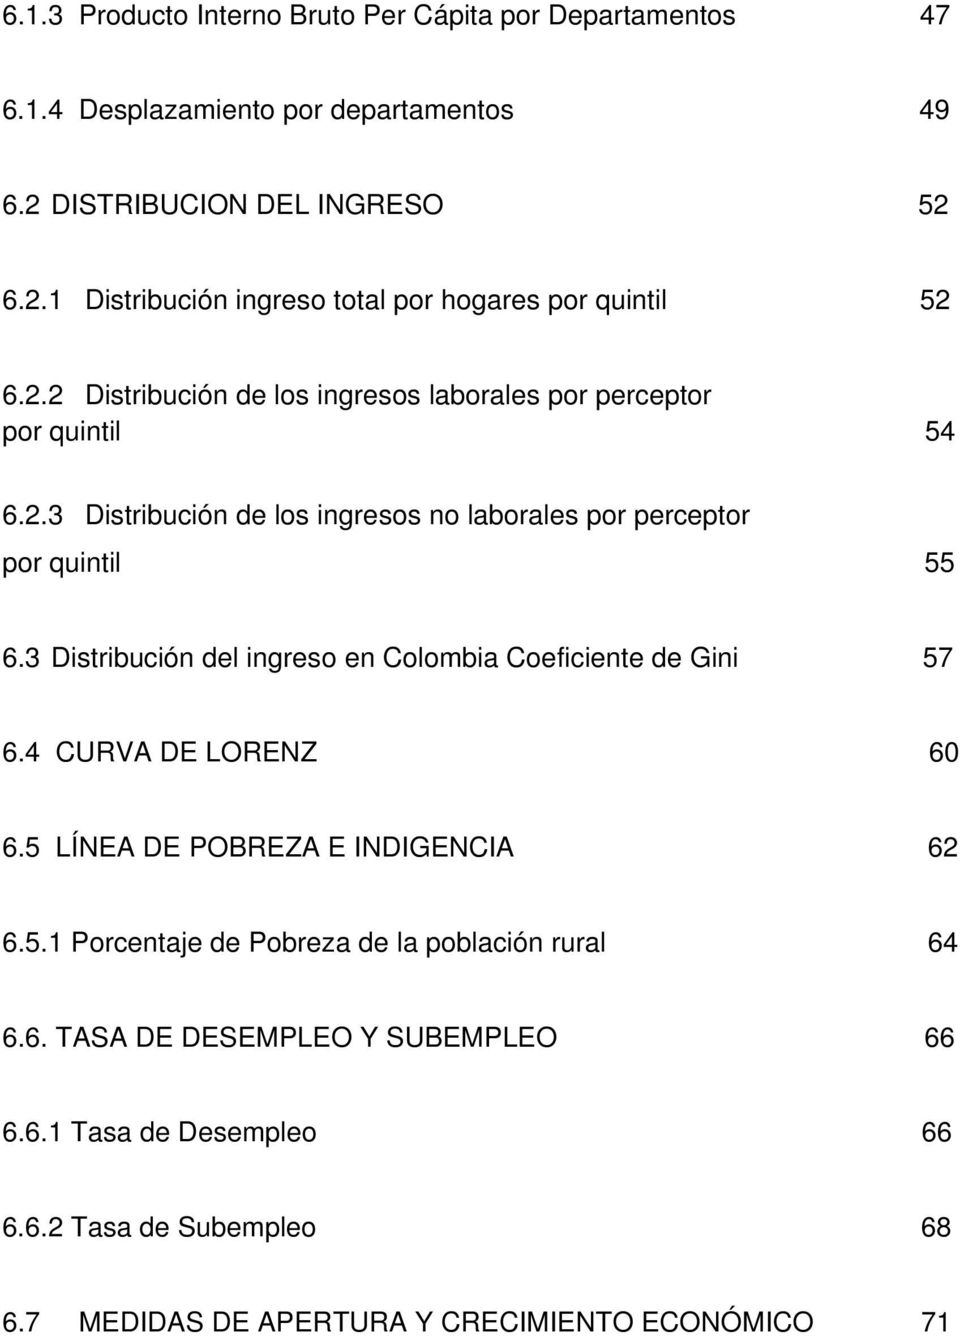 3 Distribución del ingreso en Colombia Coeficiente de Gini 57 6.4 CURVA DE LORENZ 60 6.5 LÍNEA DE POBREZA E INDIGENCIA 62 6.5.1 Porcentaje de Pobreza de la población rural 64 6.